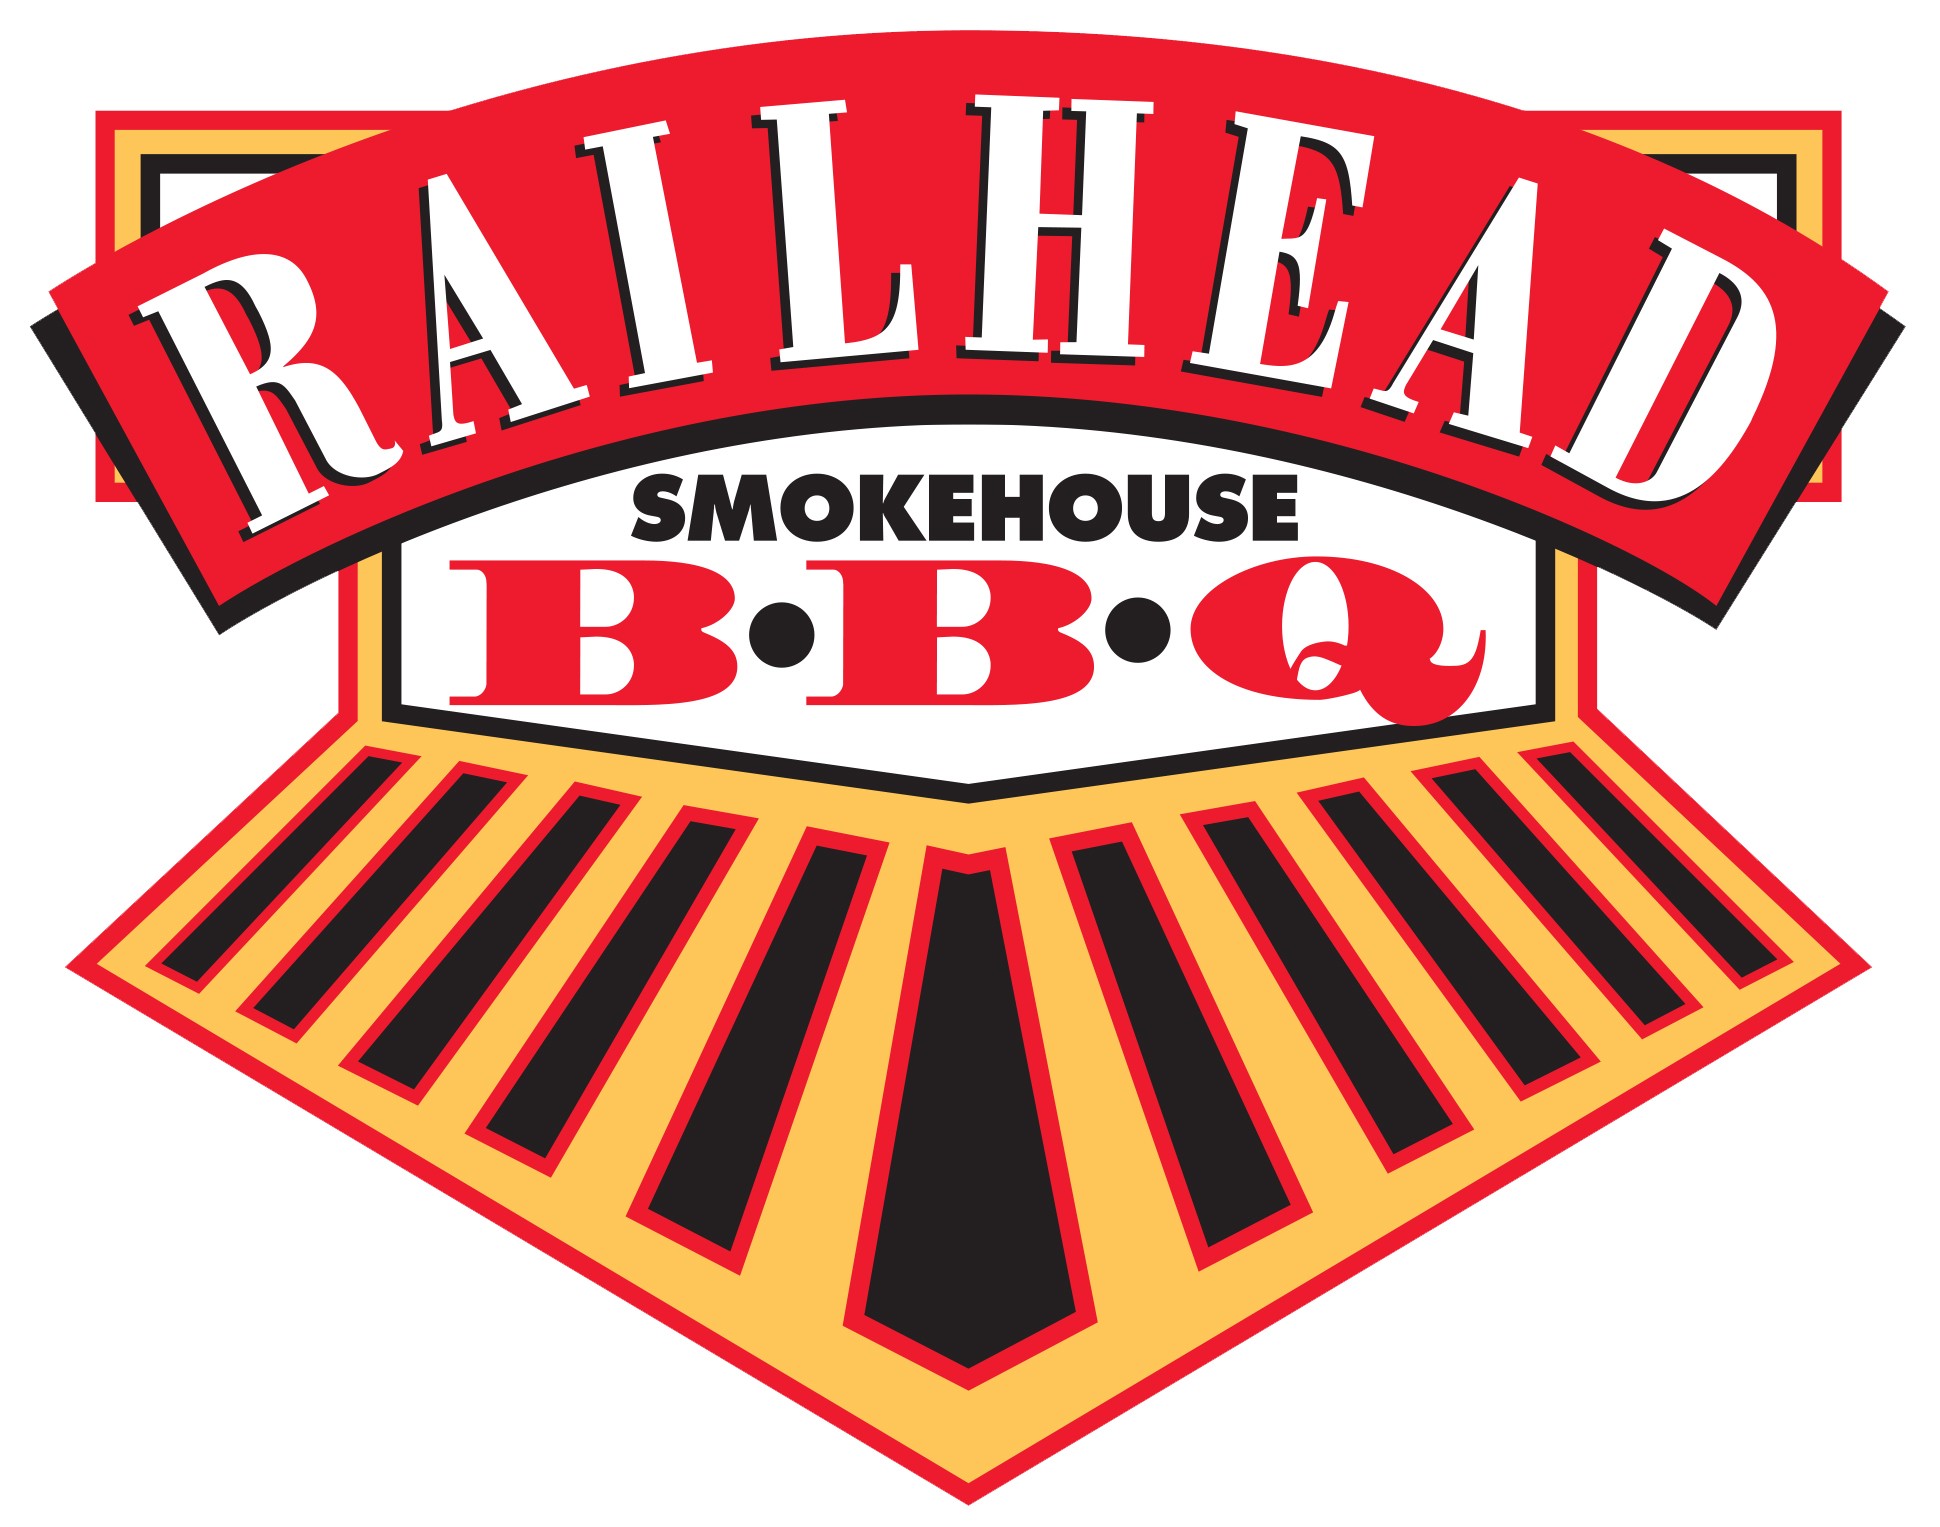 Railhead Smokehouse Aledo